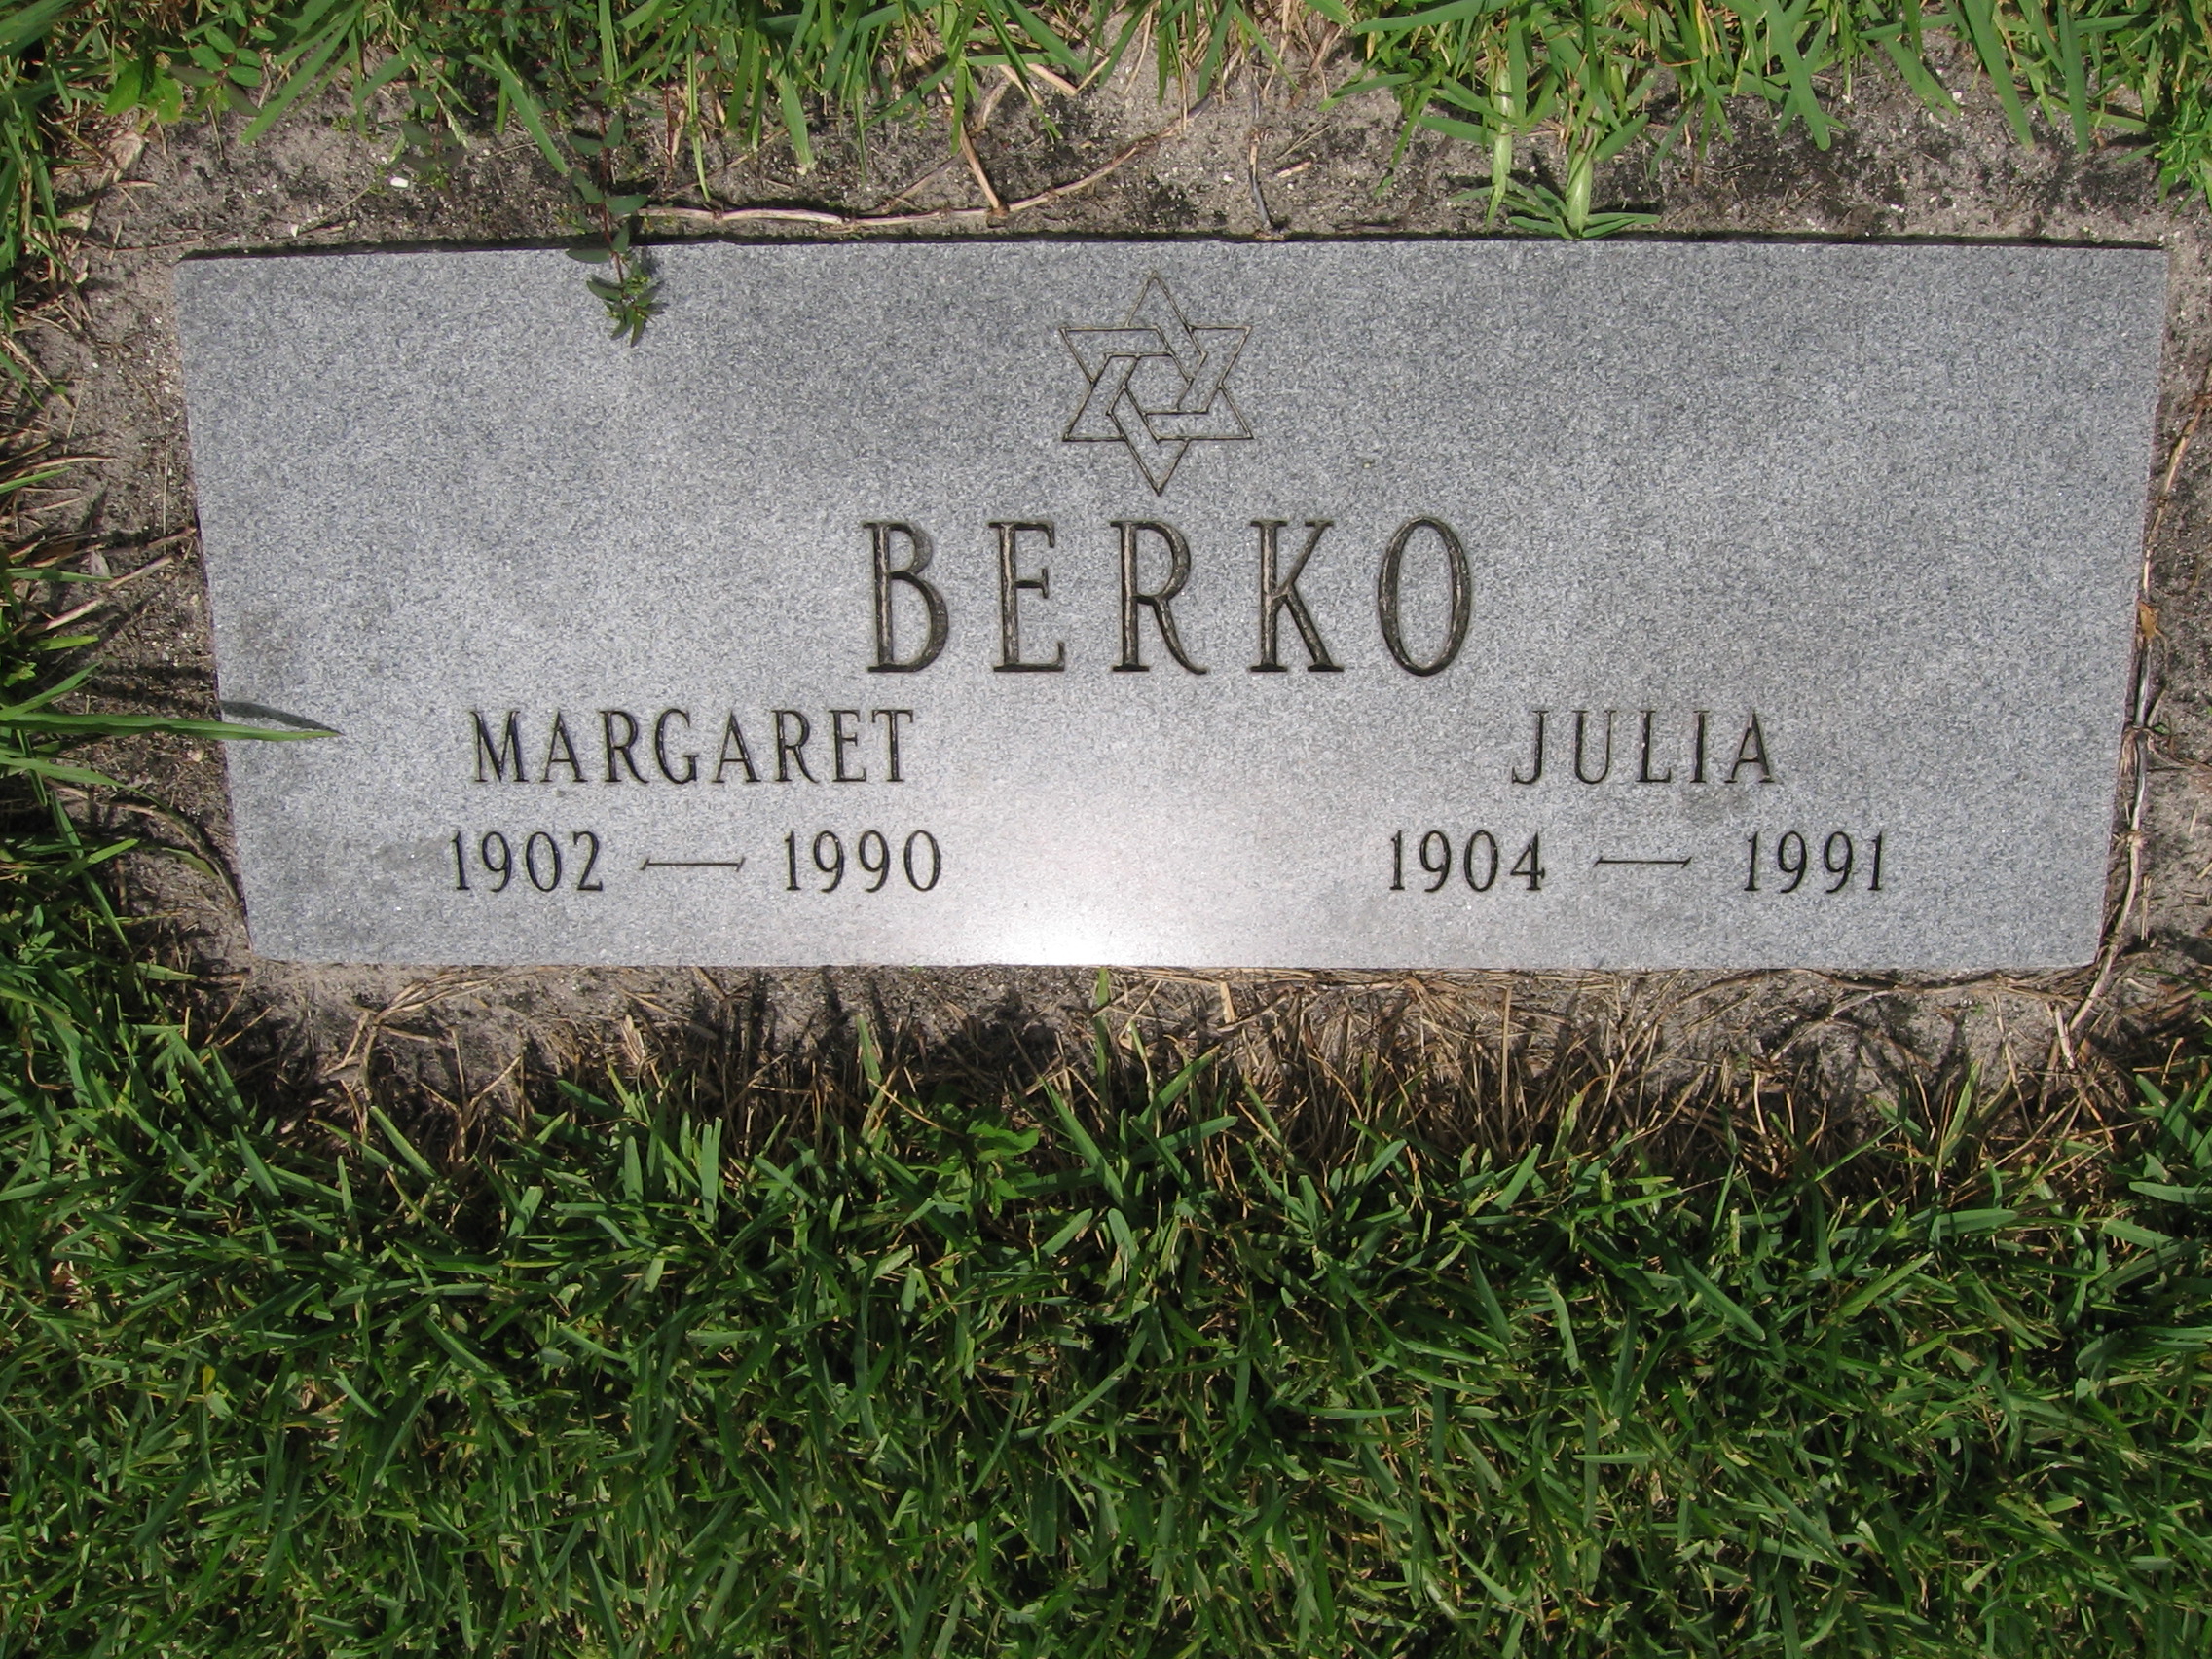 Margaret Berko